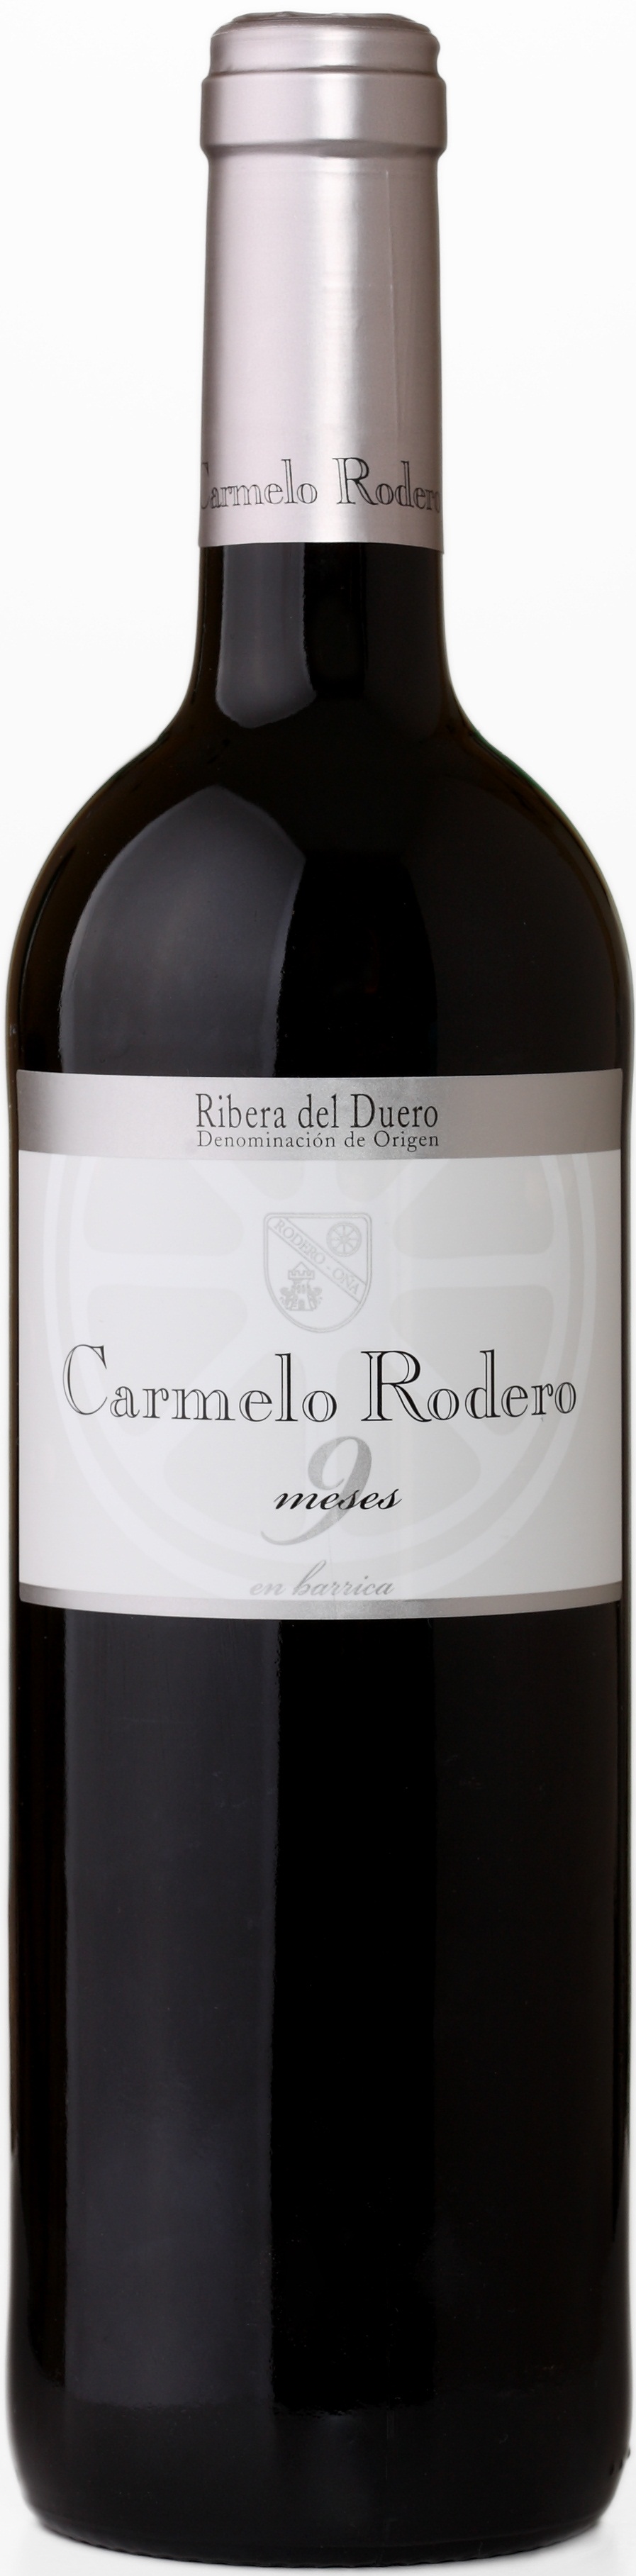 Image of Wine bottle Carmelo Rodero 9 Meses